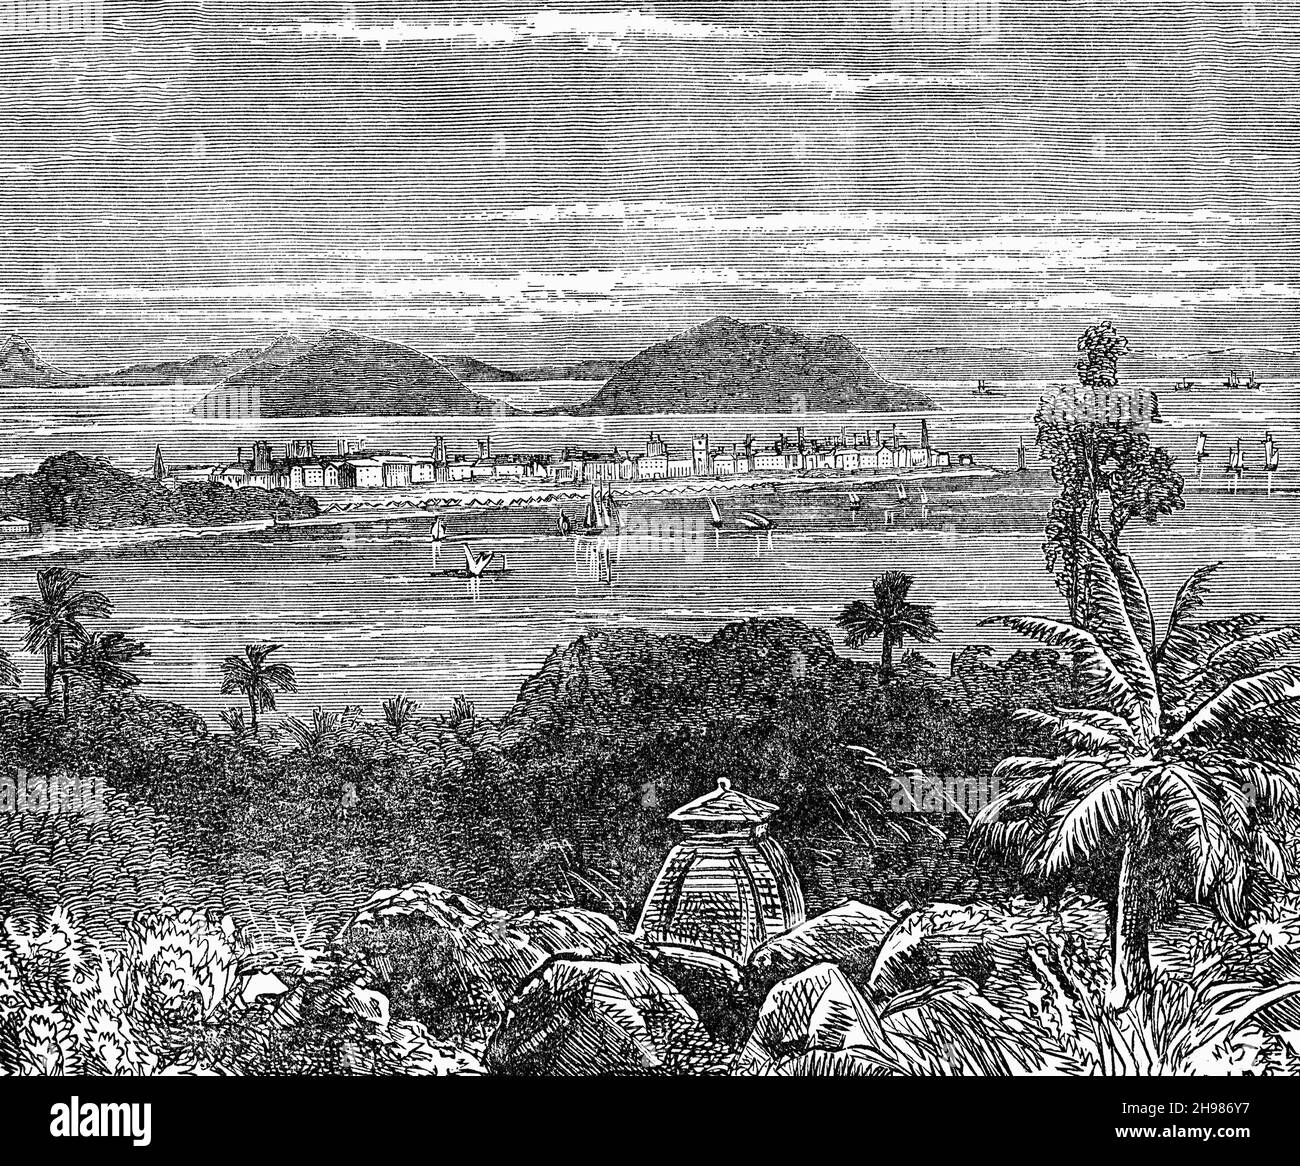 Eine Illustration der indischen Stadt Bombay aus dem späten 19th. Jahrhundert, bevor sie sich zu einer großen Stadt entwickelte. Die ab 1995 als Mumbai bekannte Hauptstadt des indischen Staates Maharashtra liegt an der Küste von Konkan an der Westküste Indiens und verfügt über einen tiefen Naturhafen. Stockfoto